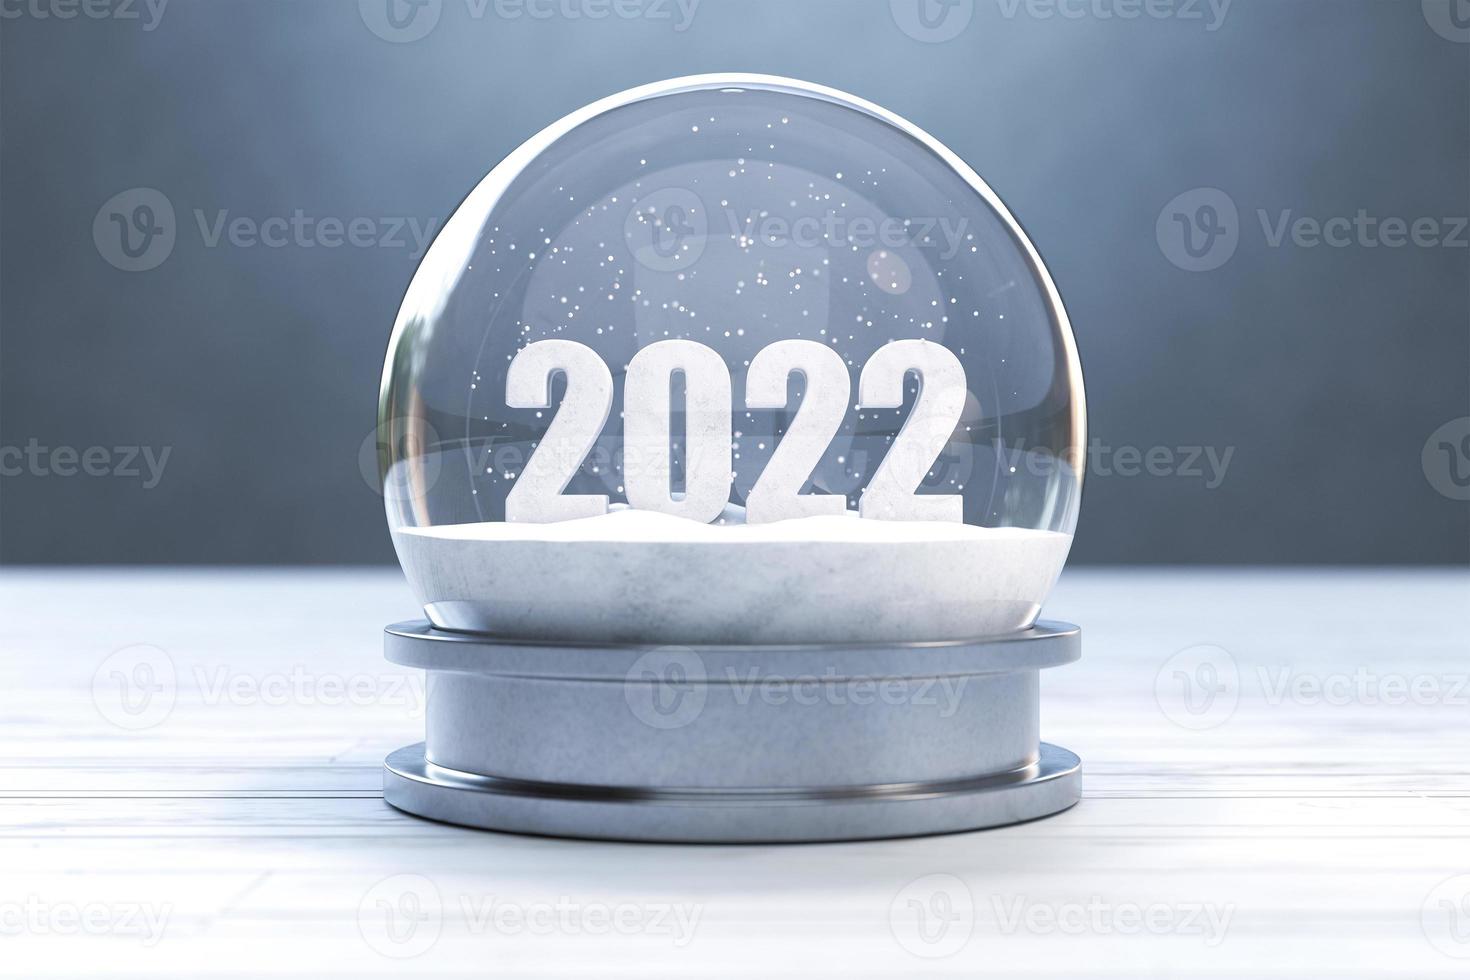 nytt år 2022, 2022 i snögloben foto